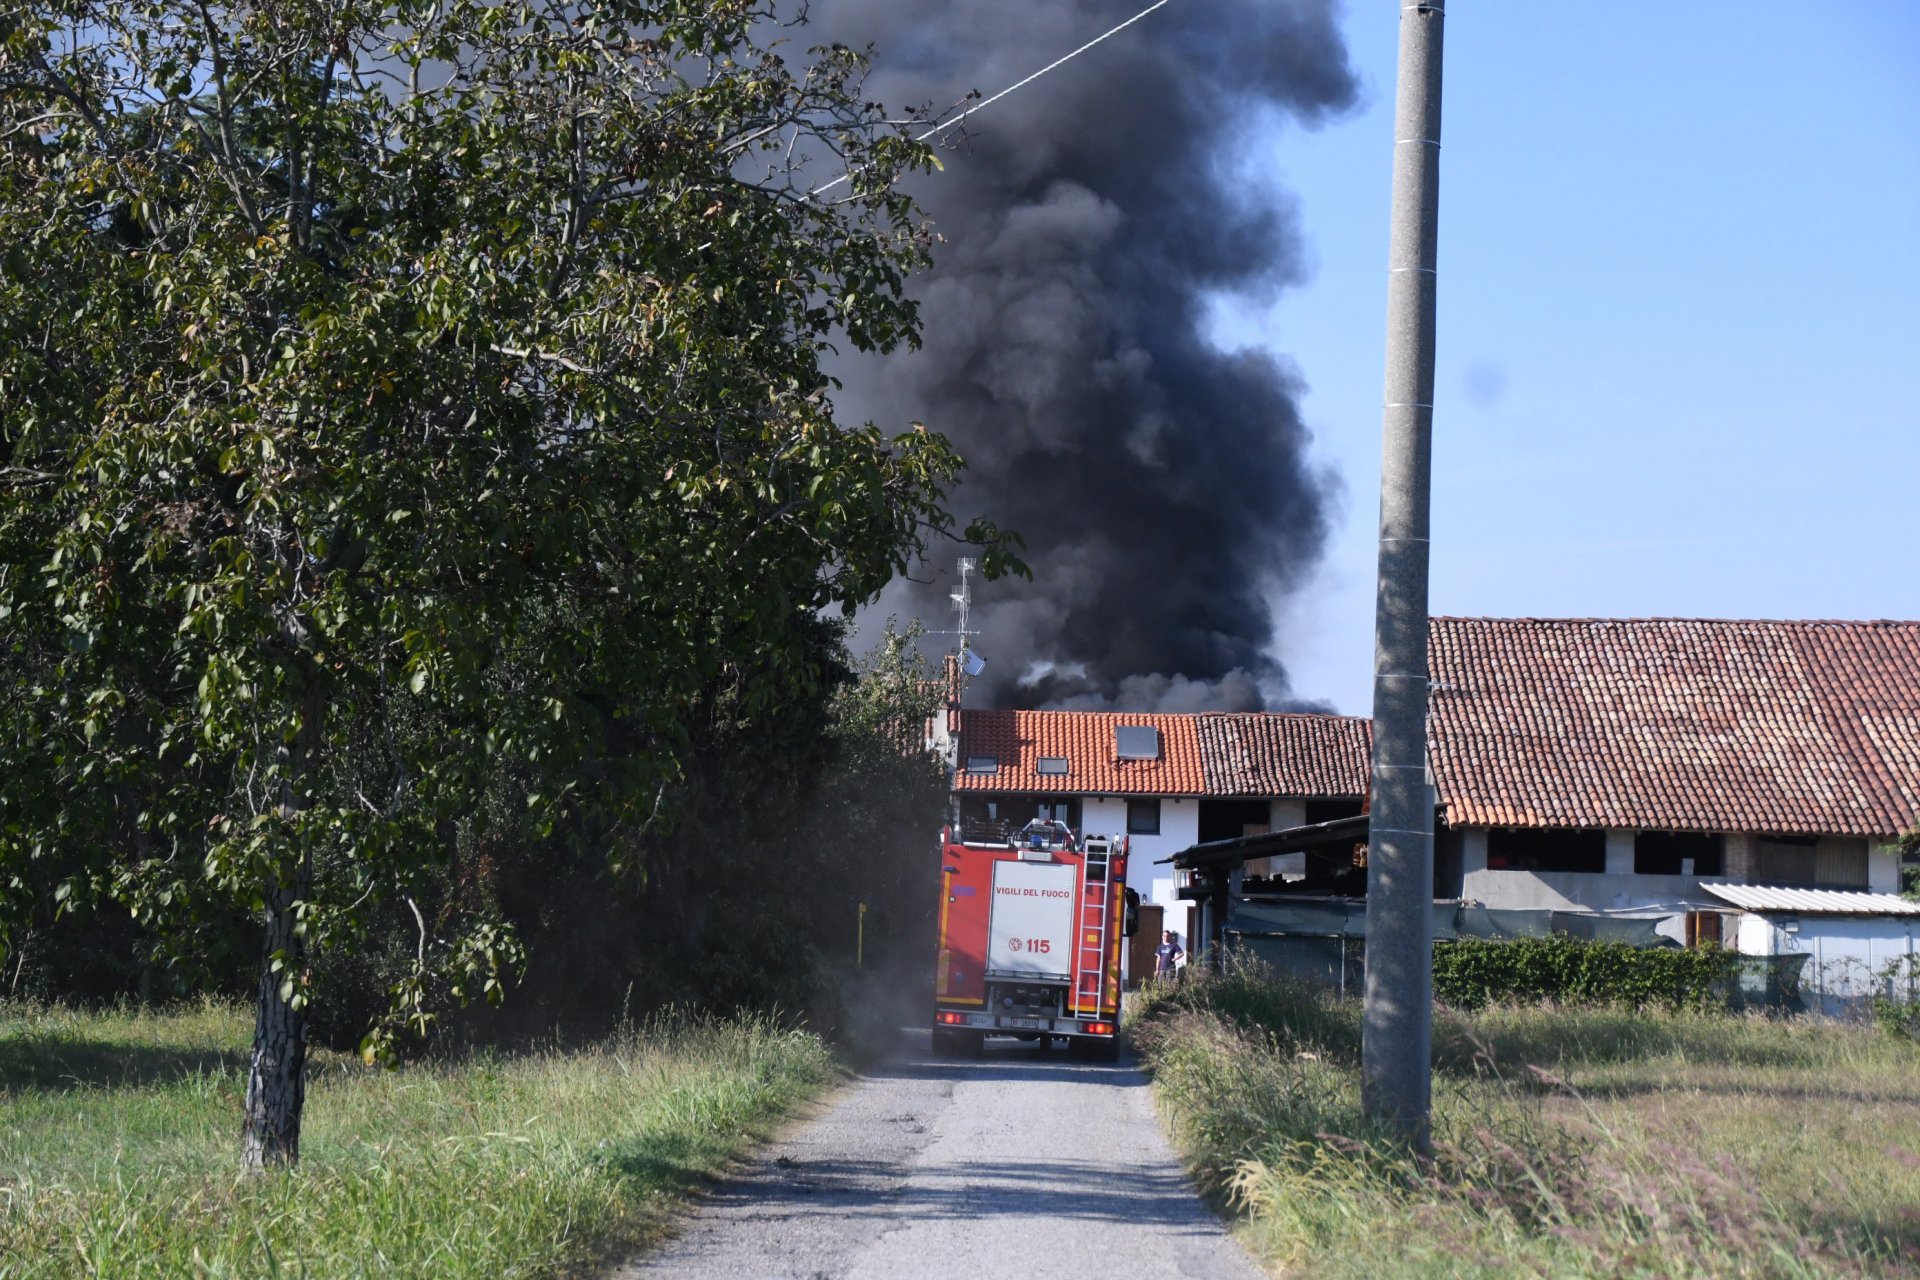 incendio in un deposito agricolo a Gessate intervento dei vigili del fuoco